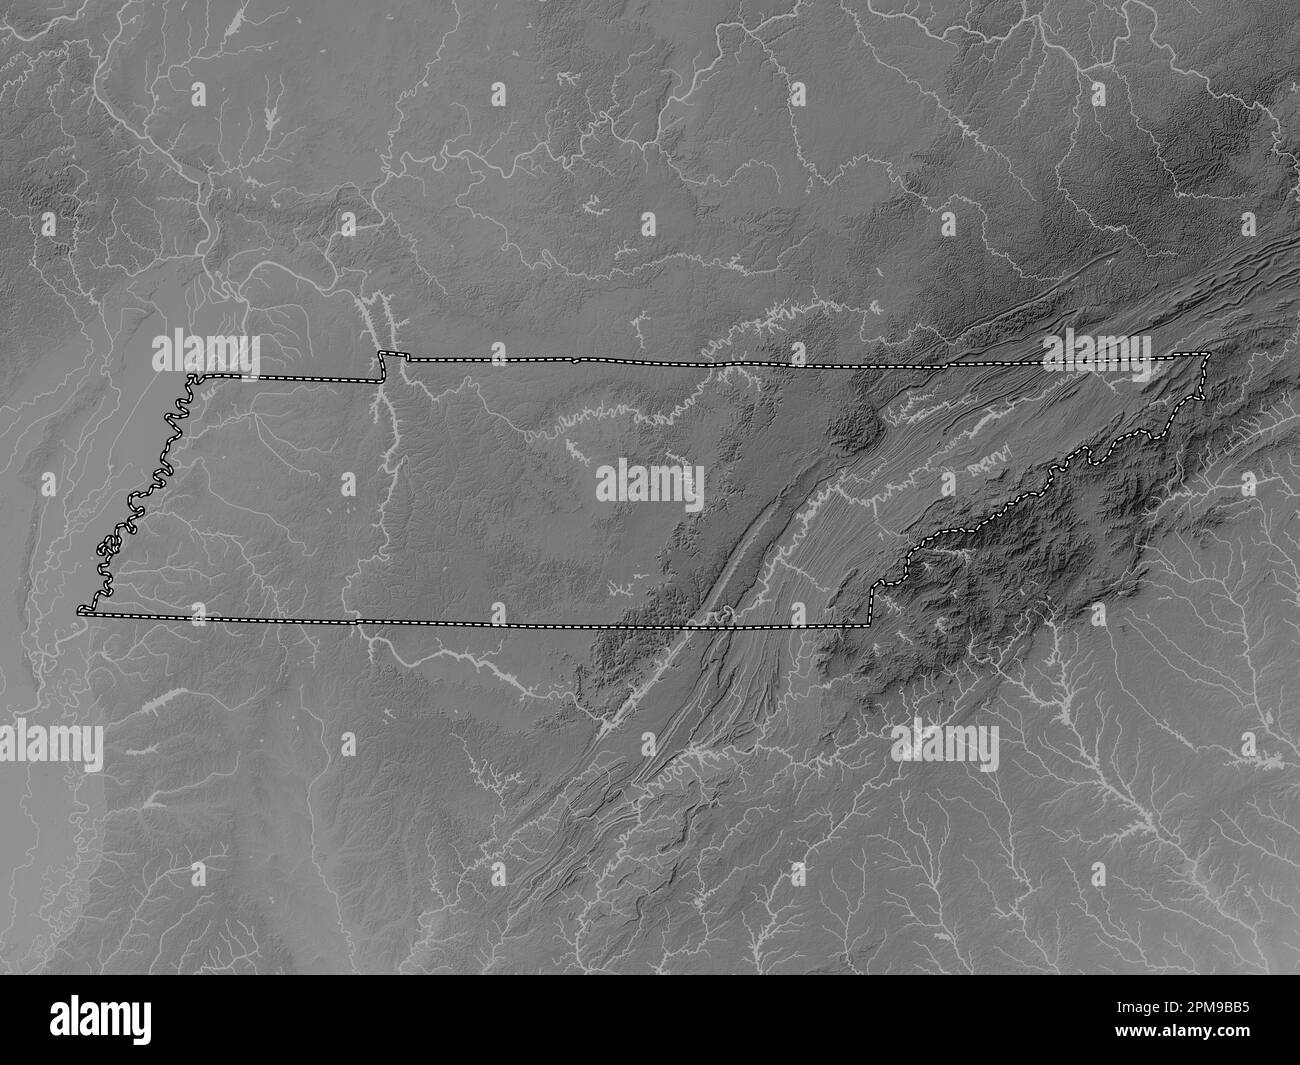 Tennessee, État des États-Unis d'Amérique. Carte d'altitude en niveaux de gris avec lacs et rivières Banque D'Images